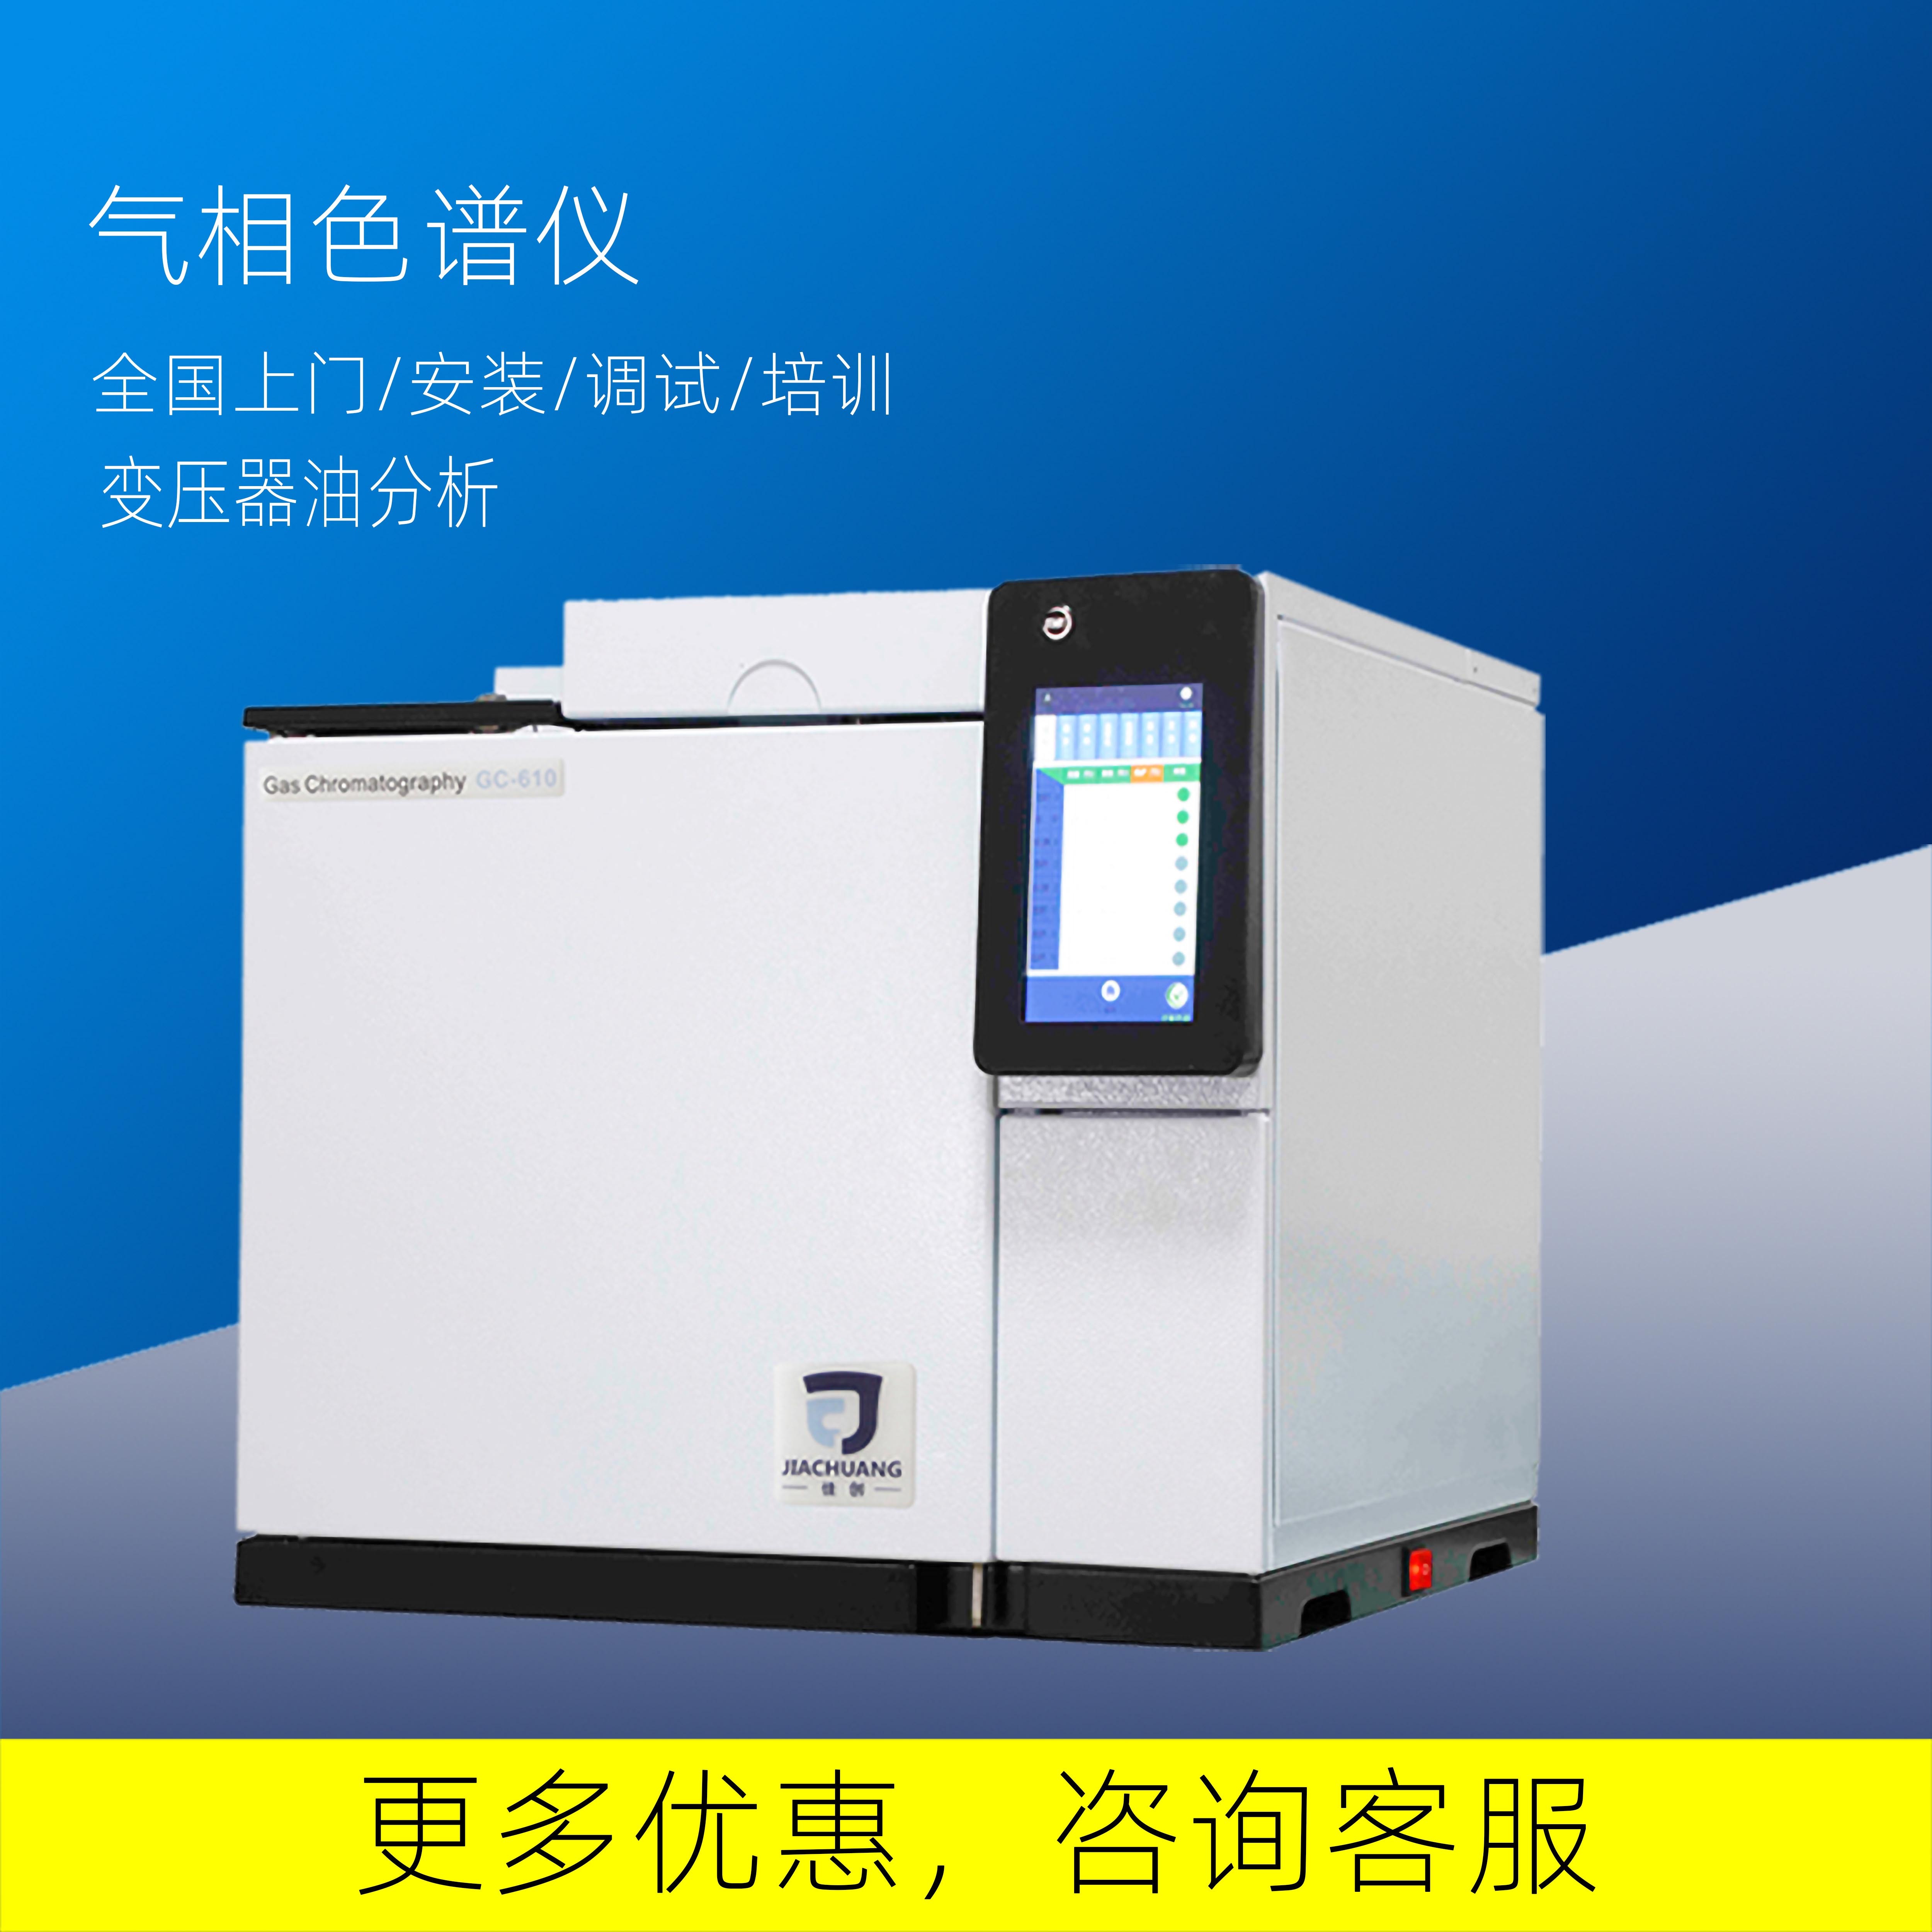 南京佳创供应气相色谱仪GC-610检测食品包装材料